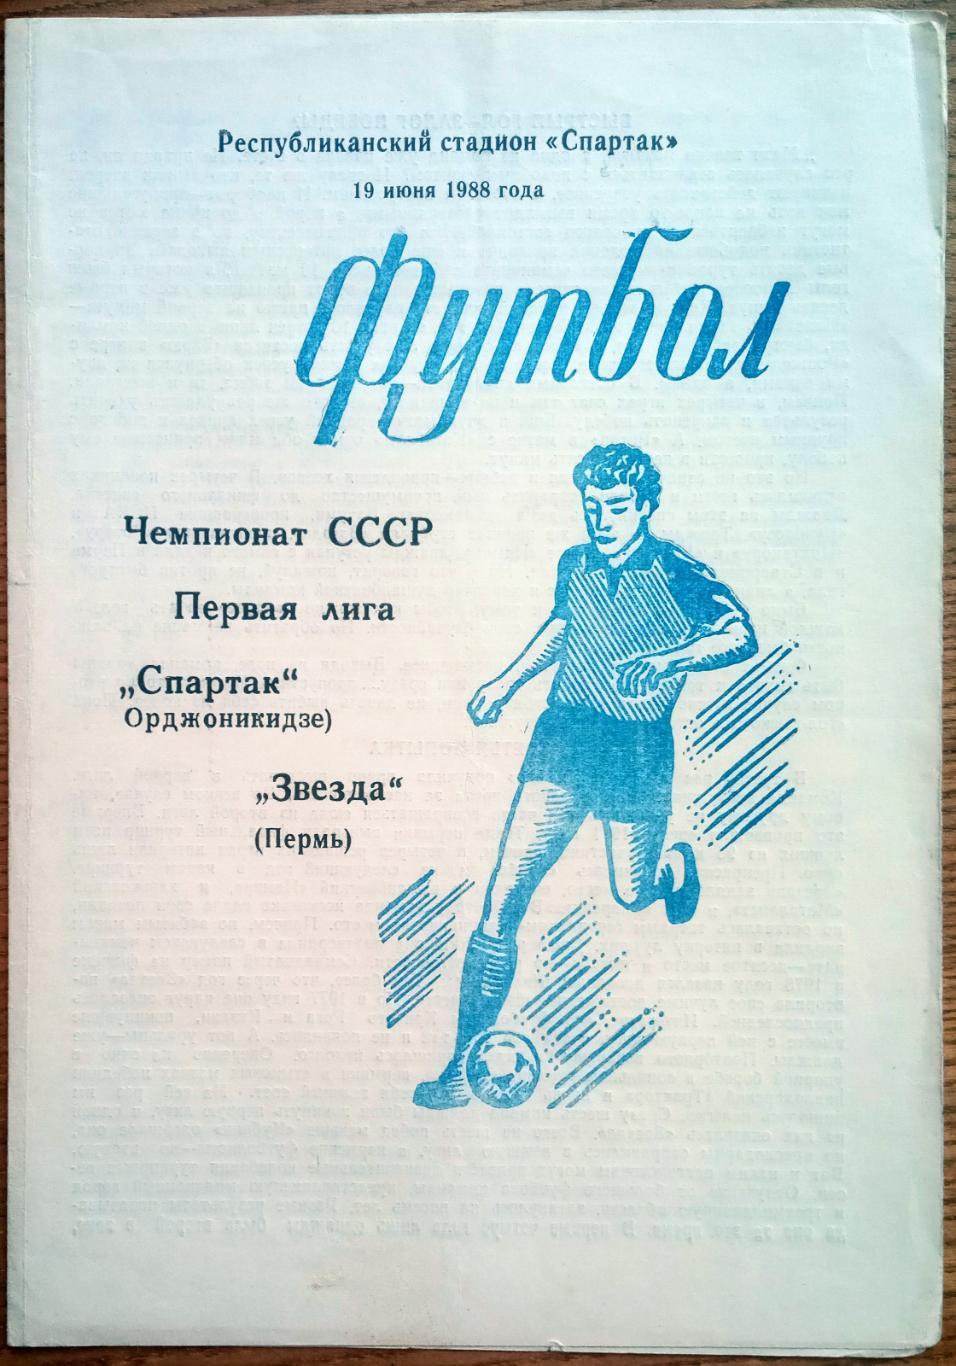 Спартак Орджоникидзе – Звезда Пермь 19.06.1988